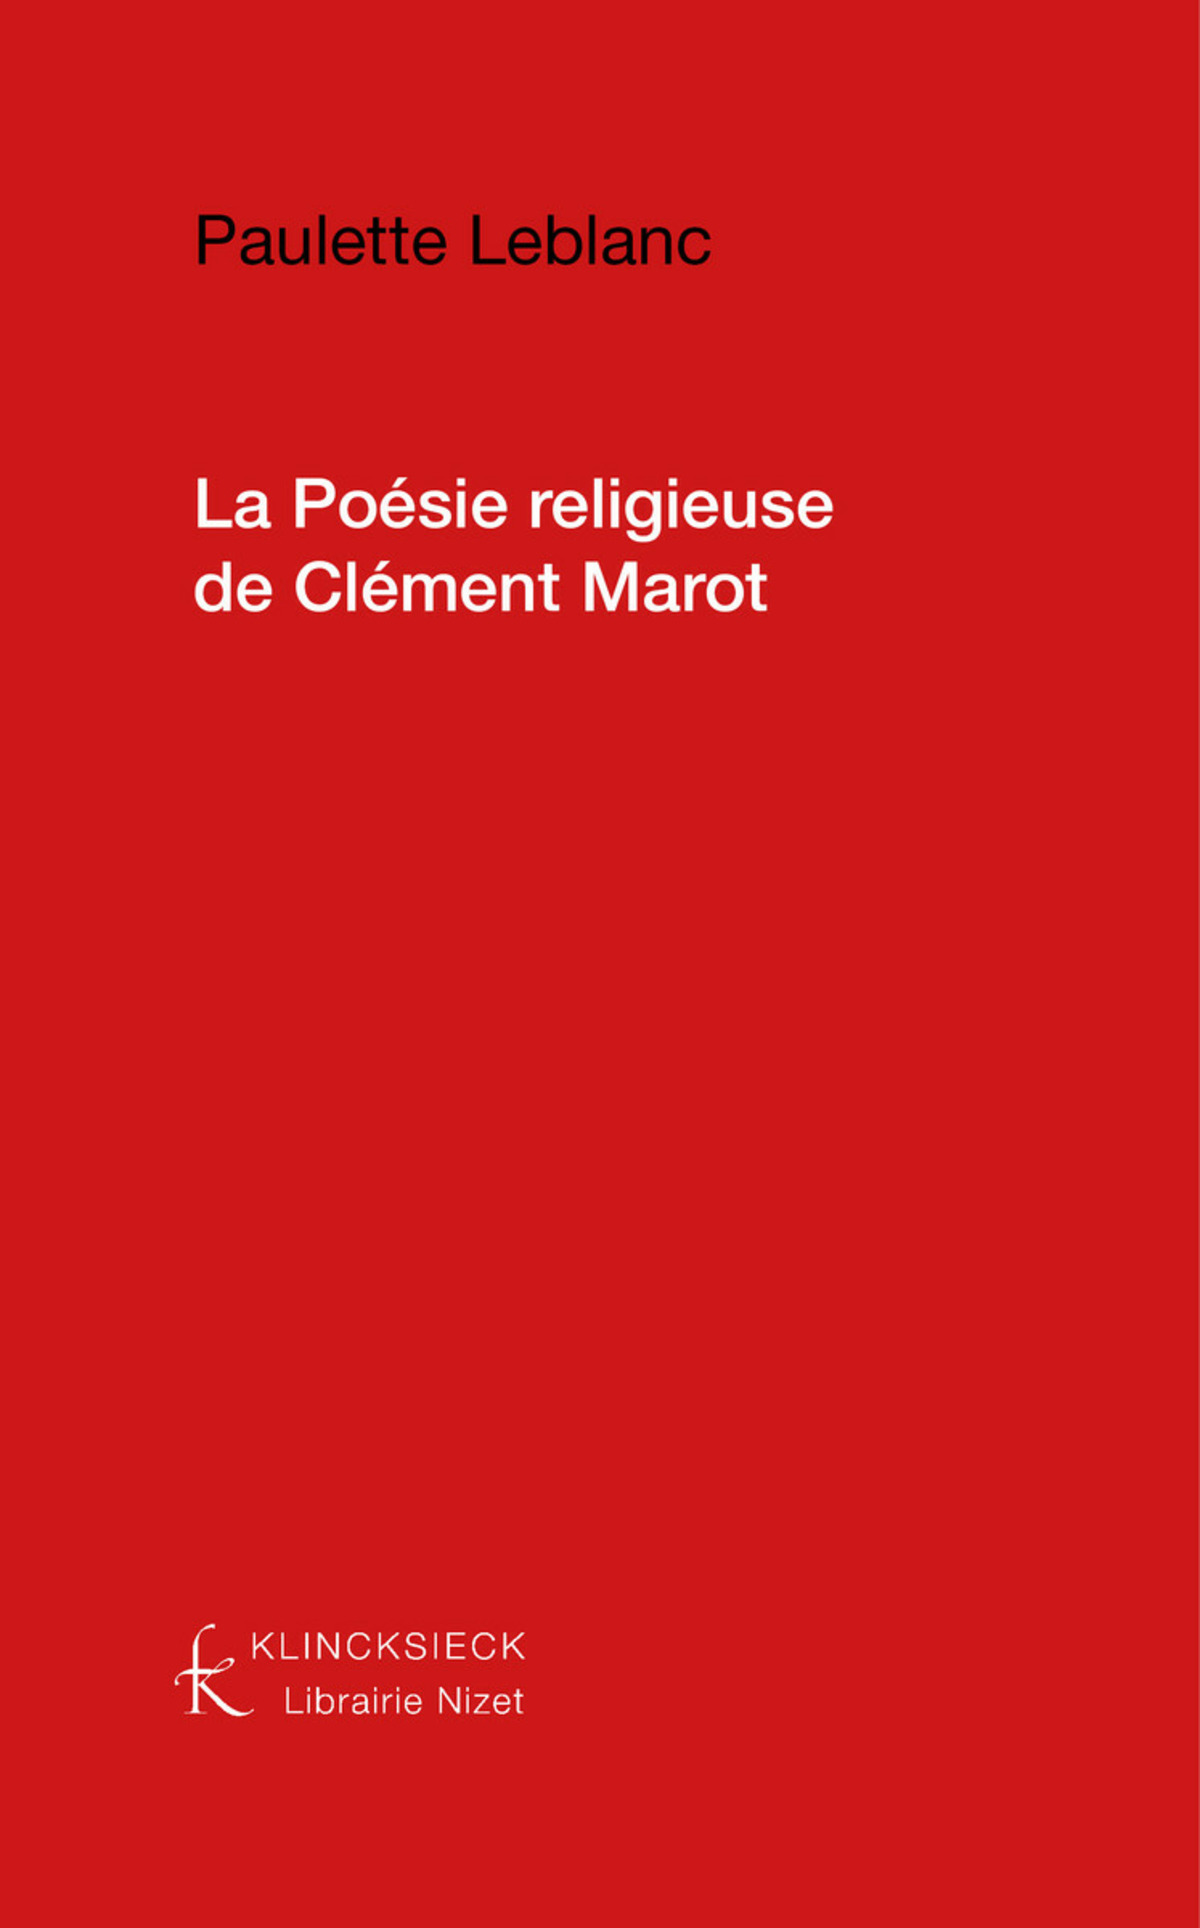 La Poésie religieuse de Clément Marot